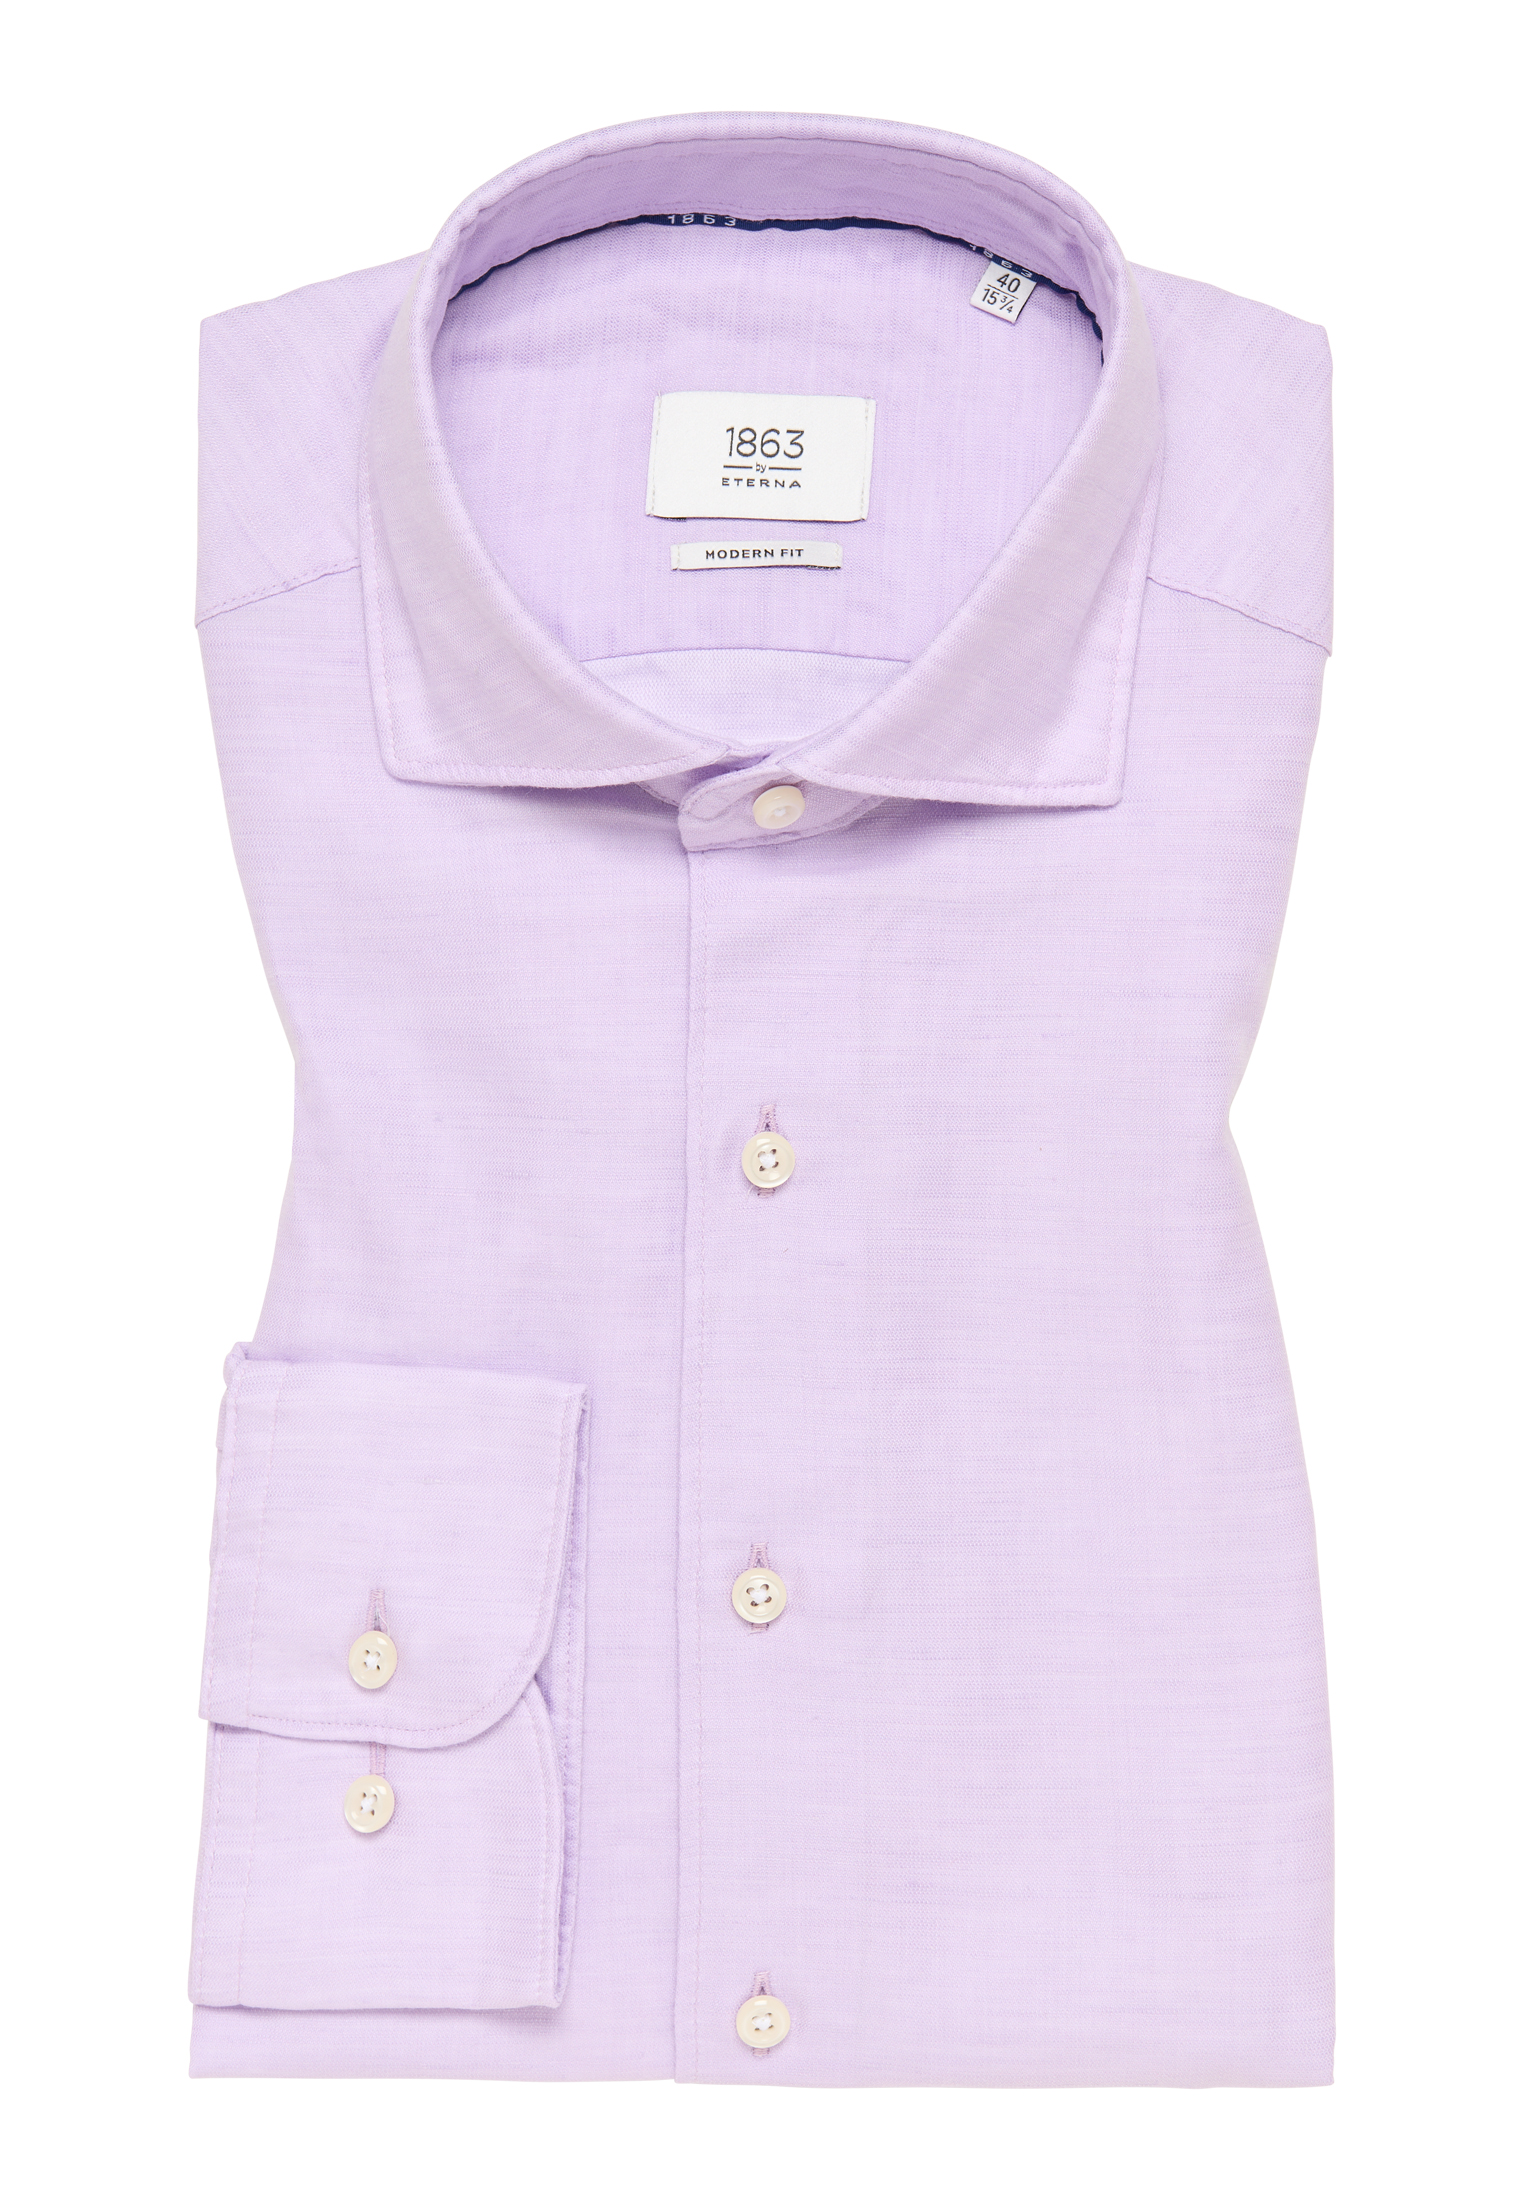 plain 1SH00629-09-11-46-1/1 | MODERN | 46 Shirt | Linen in FIT sleeve | lavender lavender long